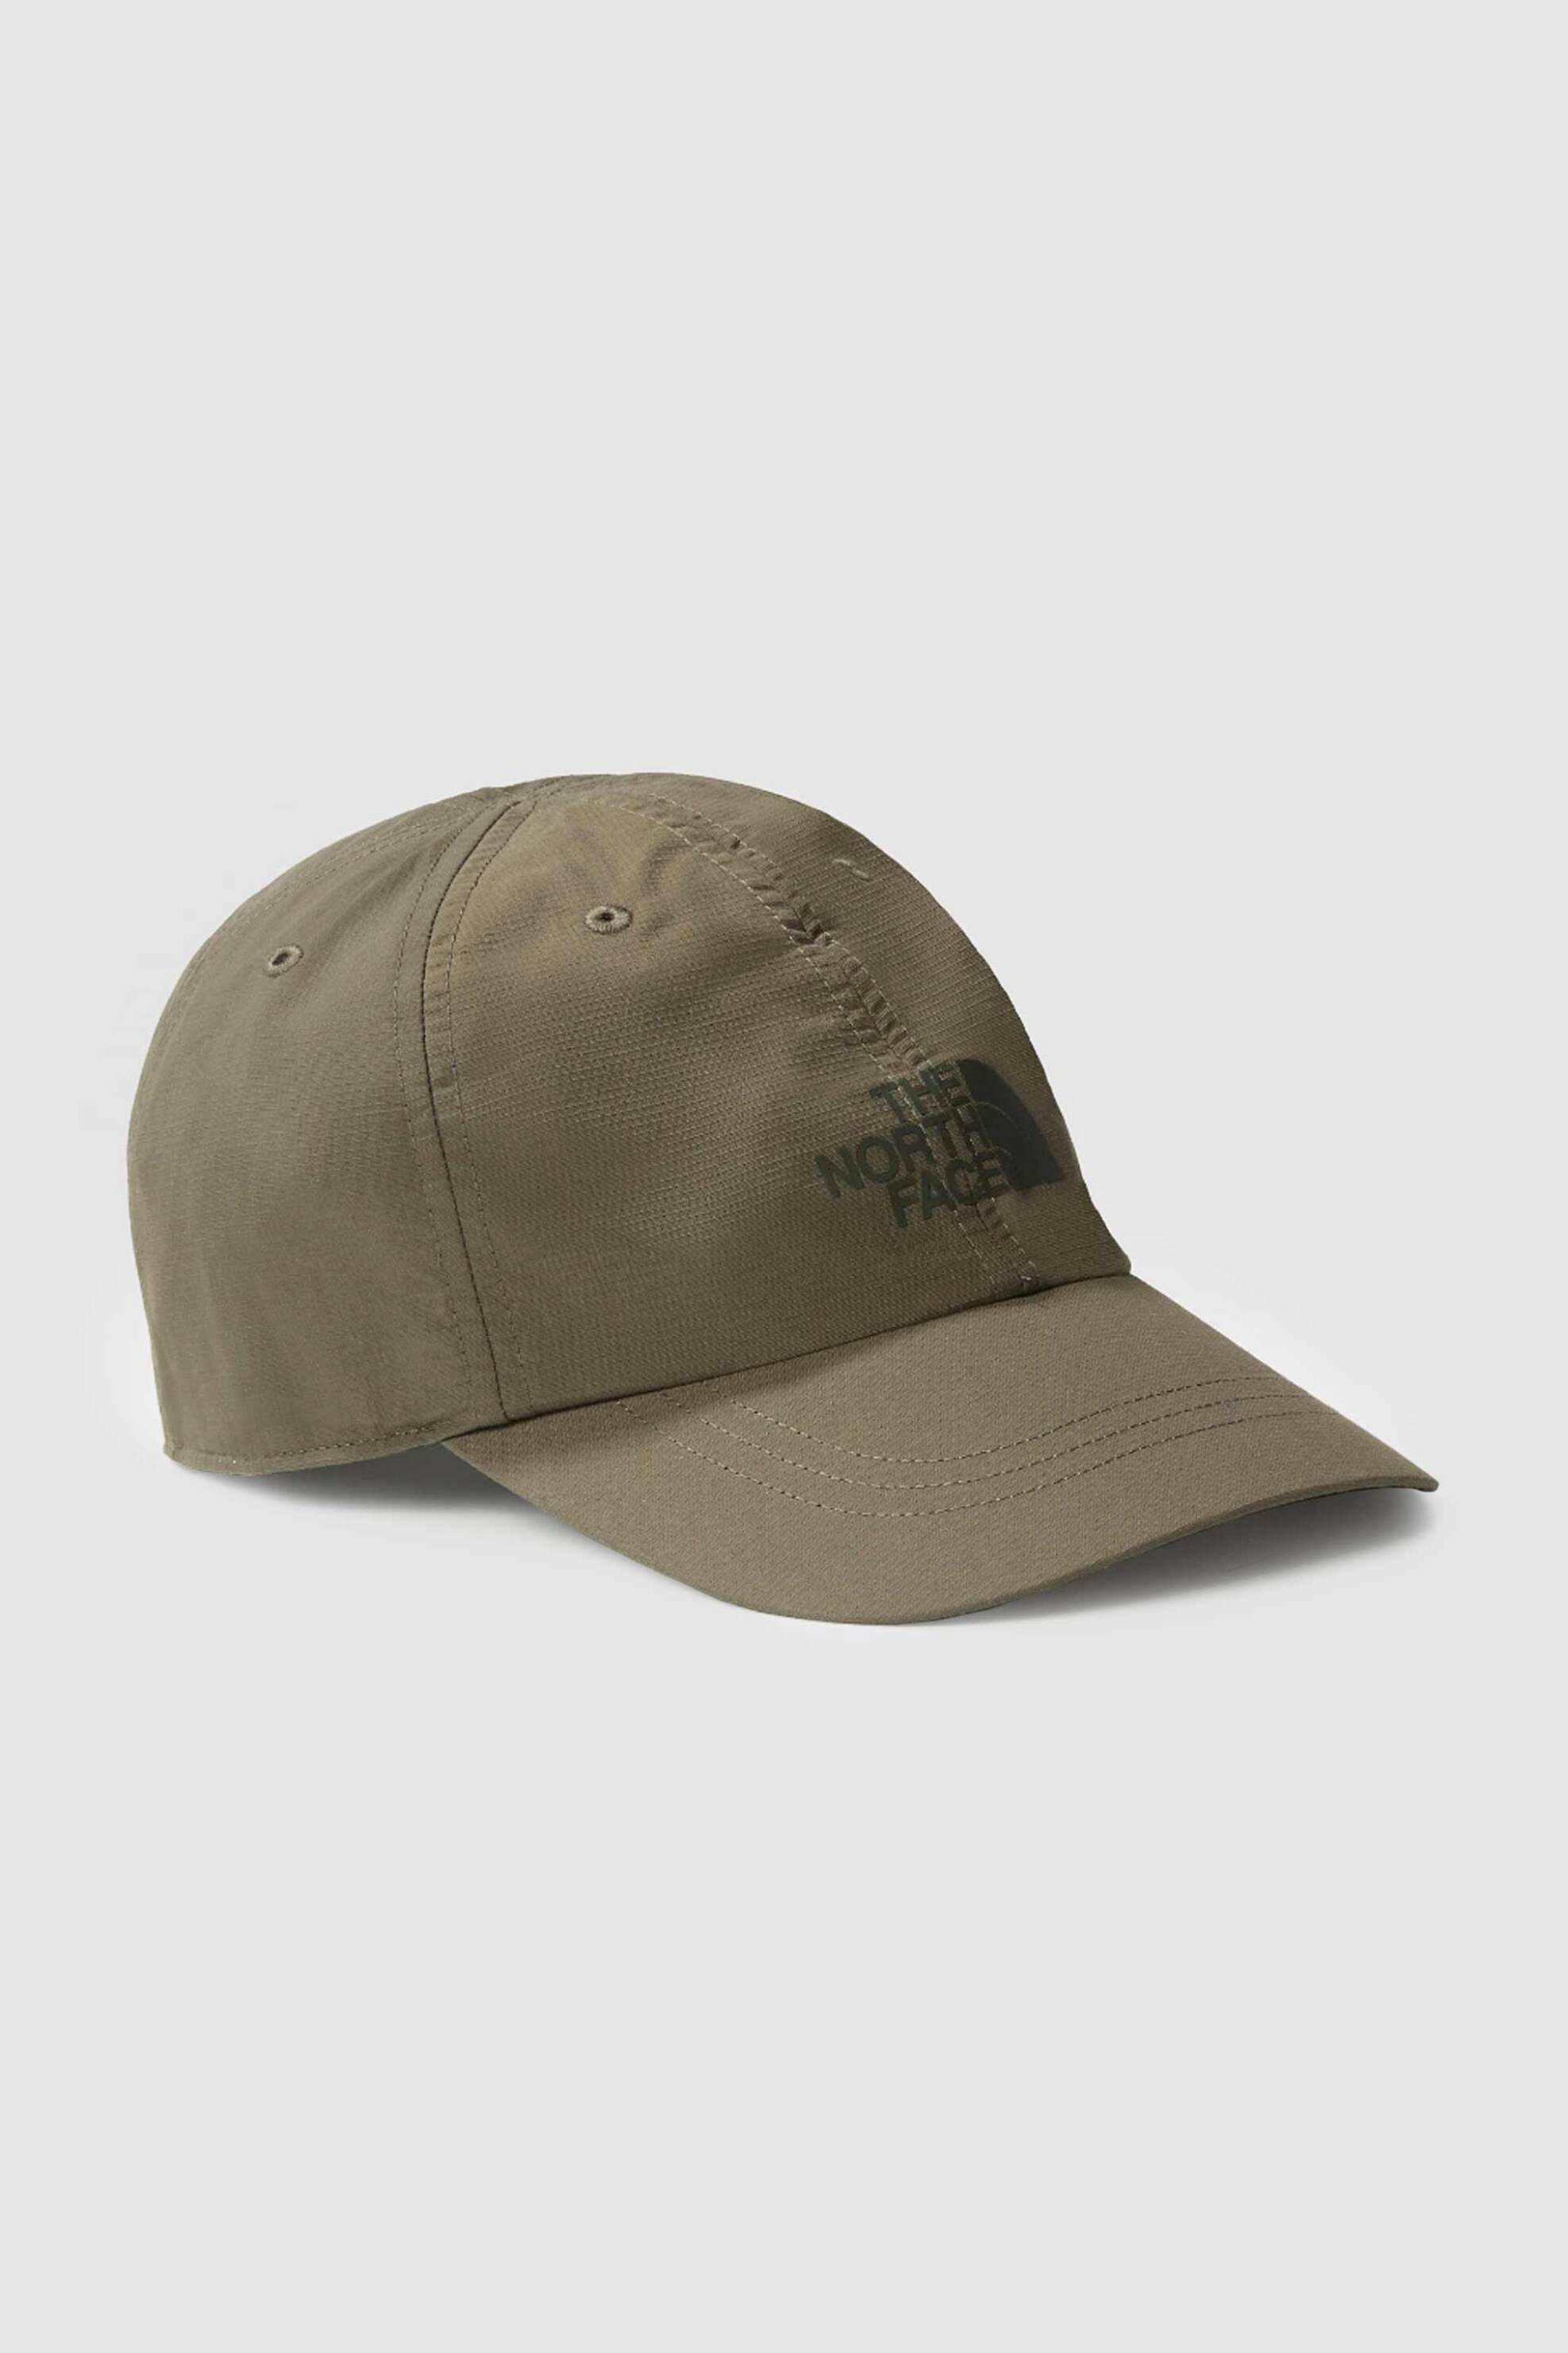 Ανδρική Μόδα > Ανδρικά Αξεσουάρ > Ανδρικά Καπέλα & Σκούφοι The North Face unisex καπέλο μονόχρωμο με logo print "Horizon Cap - NF0A5FXL21L1 Χακί